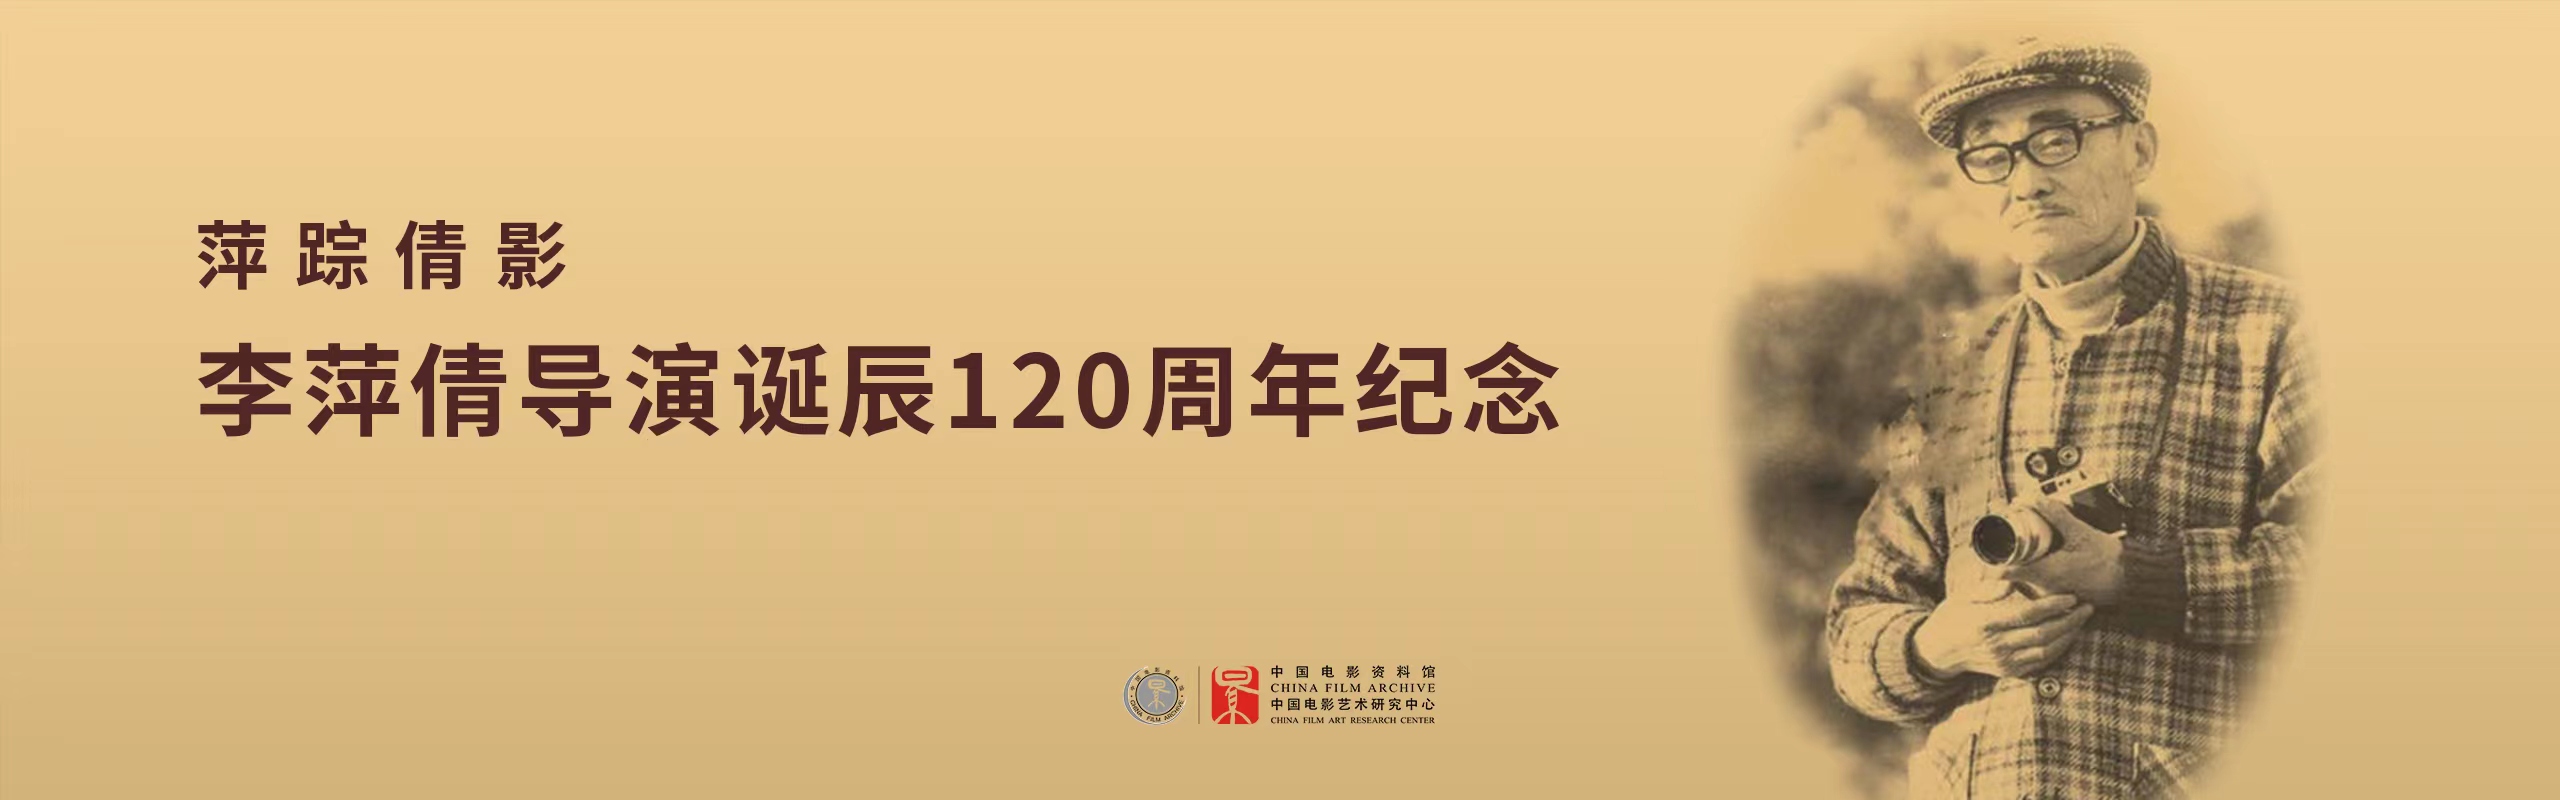 萍踪倩影——李萍倩导演诞辰120周年纪念